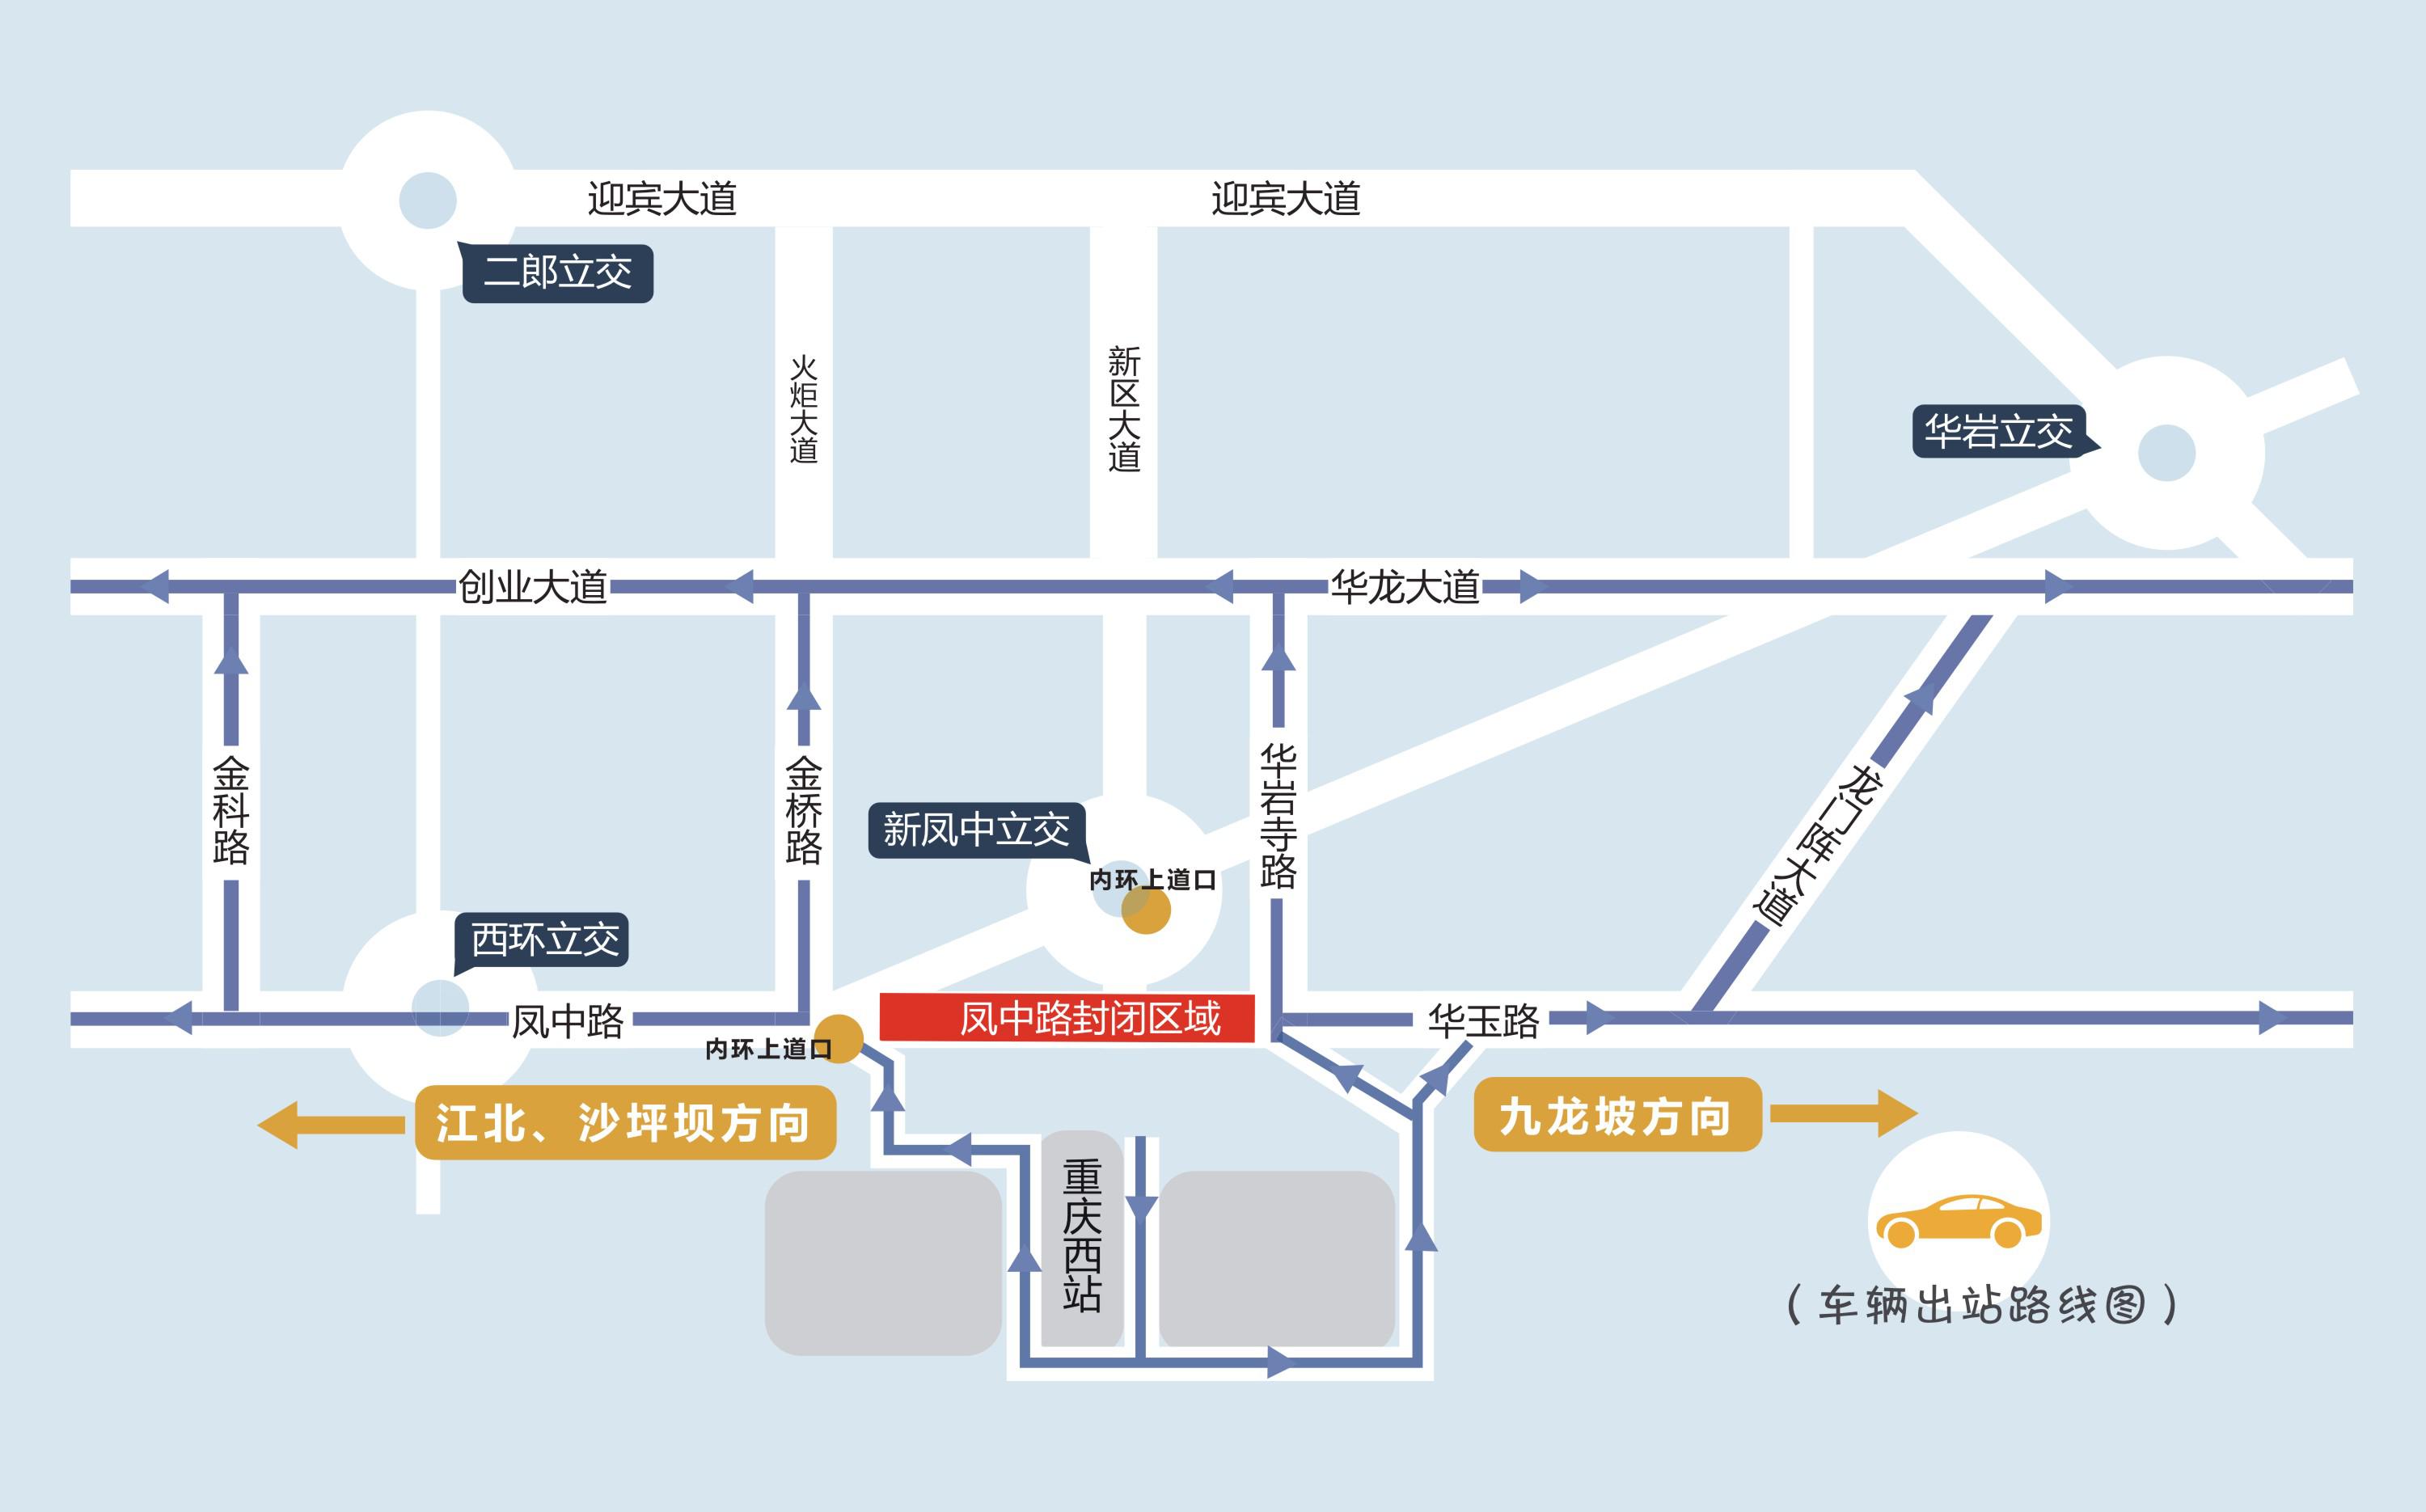 30日前重庆西站新增两个临时停车场 步行进出